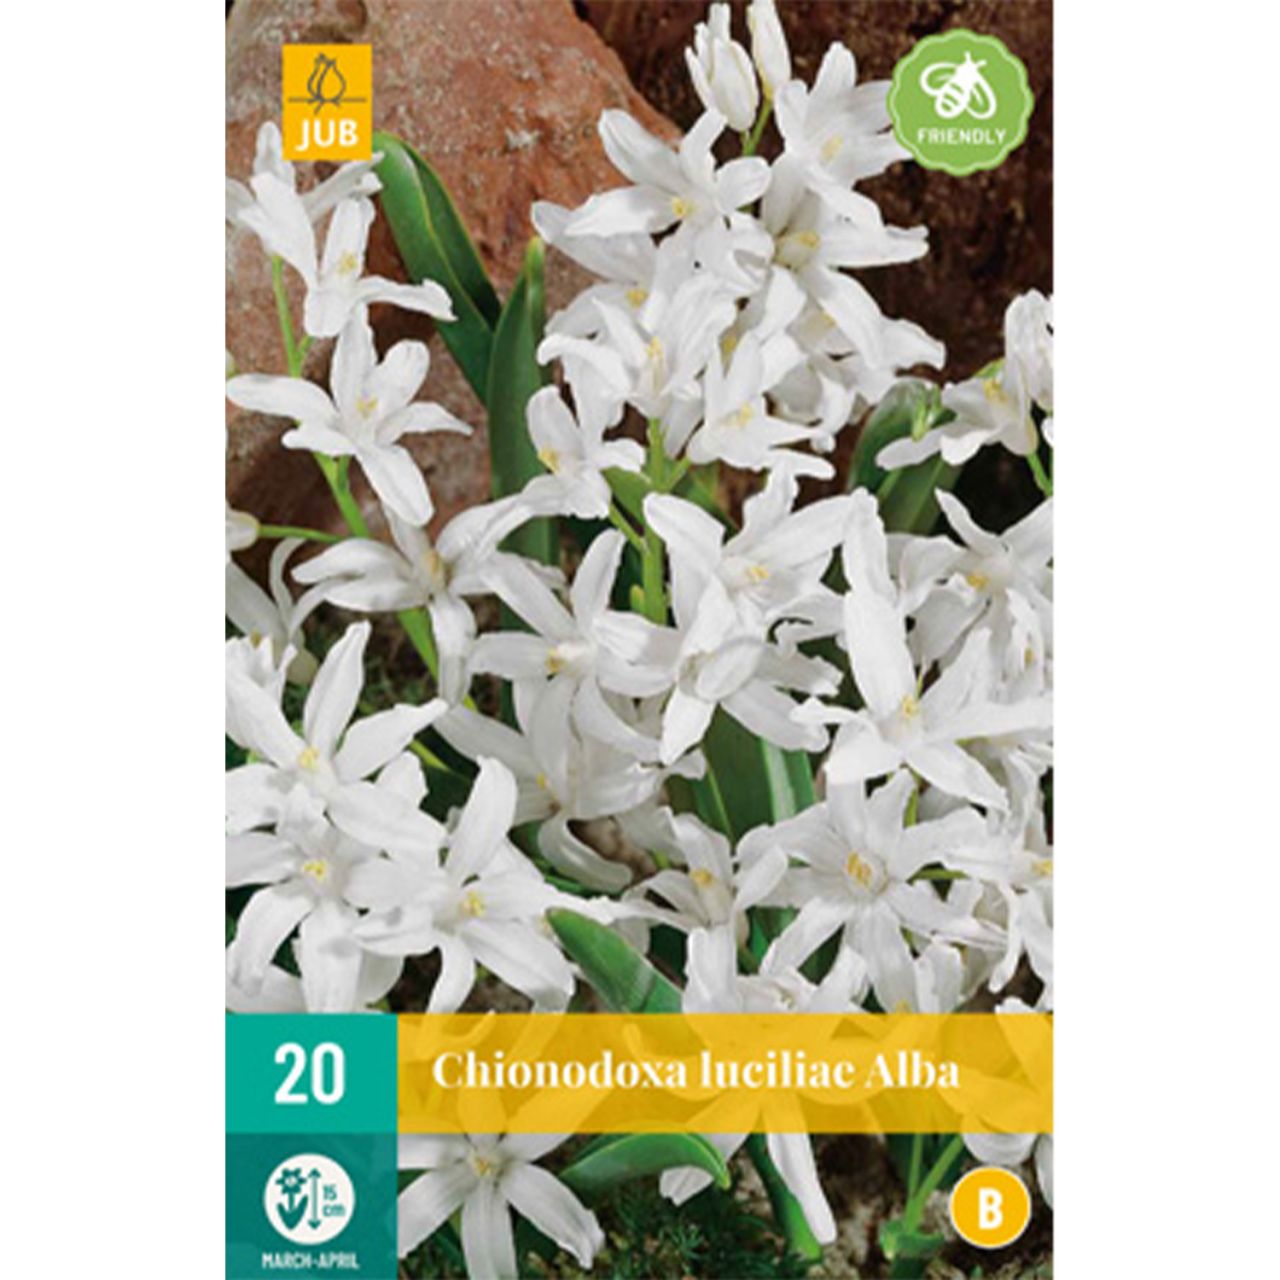 Kategorie <b>Herbst-Blumenzwiebeln </b> - Weißer Schneeglanz 'Alba' - 20 Stück - Chionodoxa luciliae alba